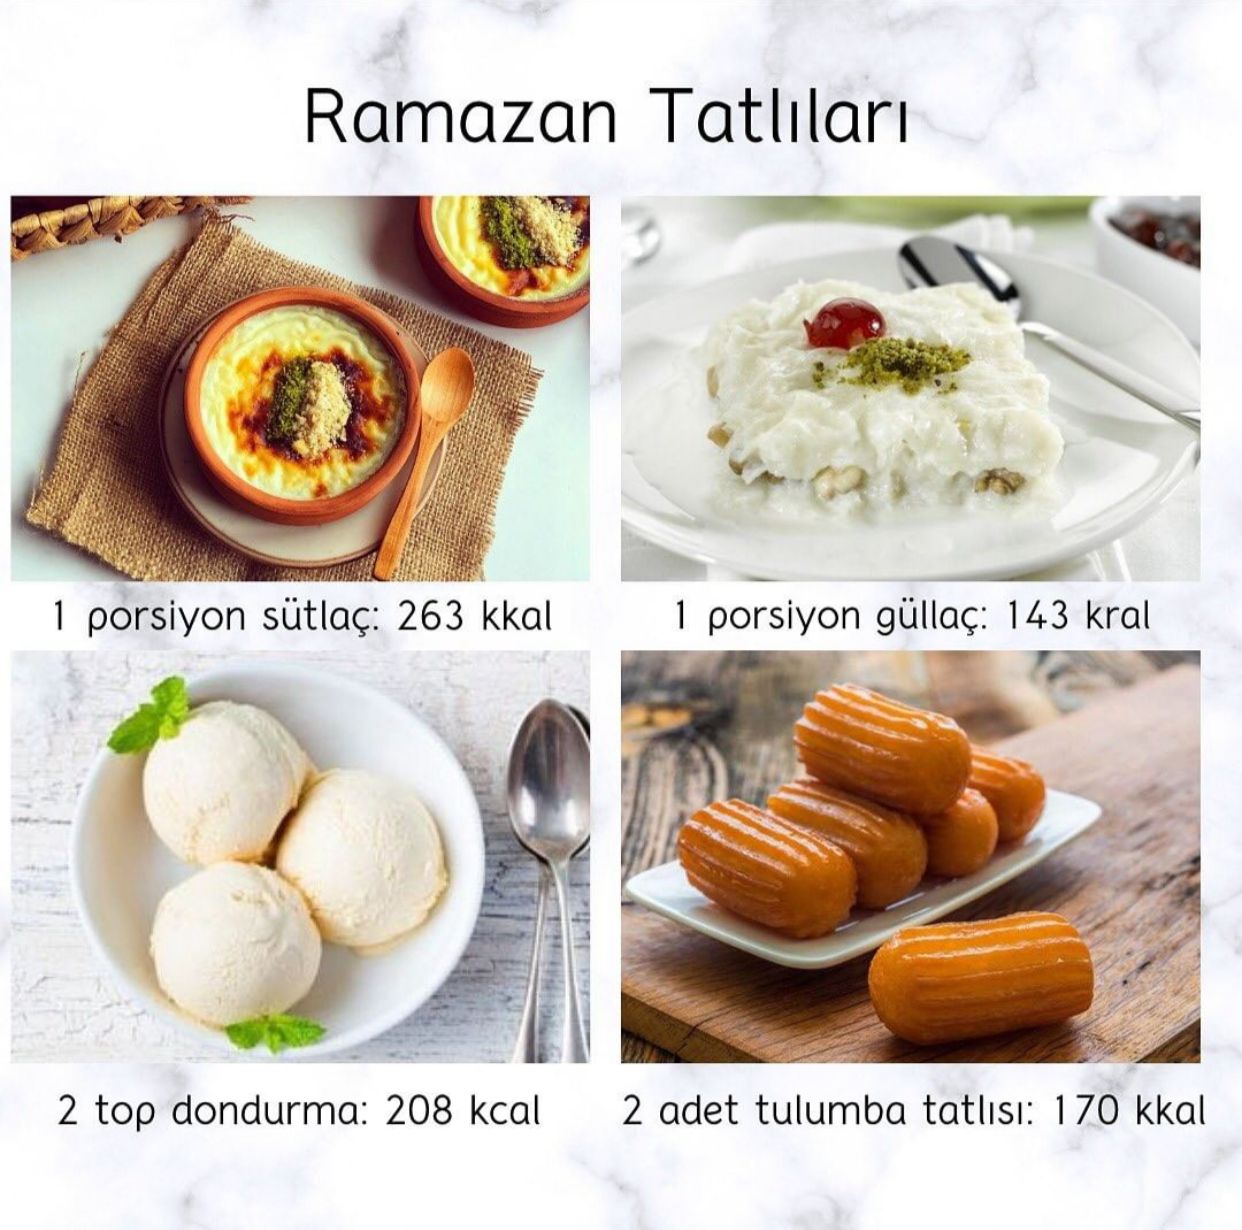 Ramazan Tatlıları ve Kalorileri